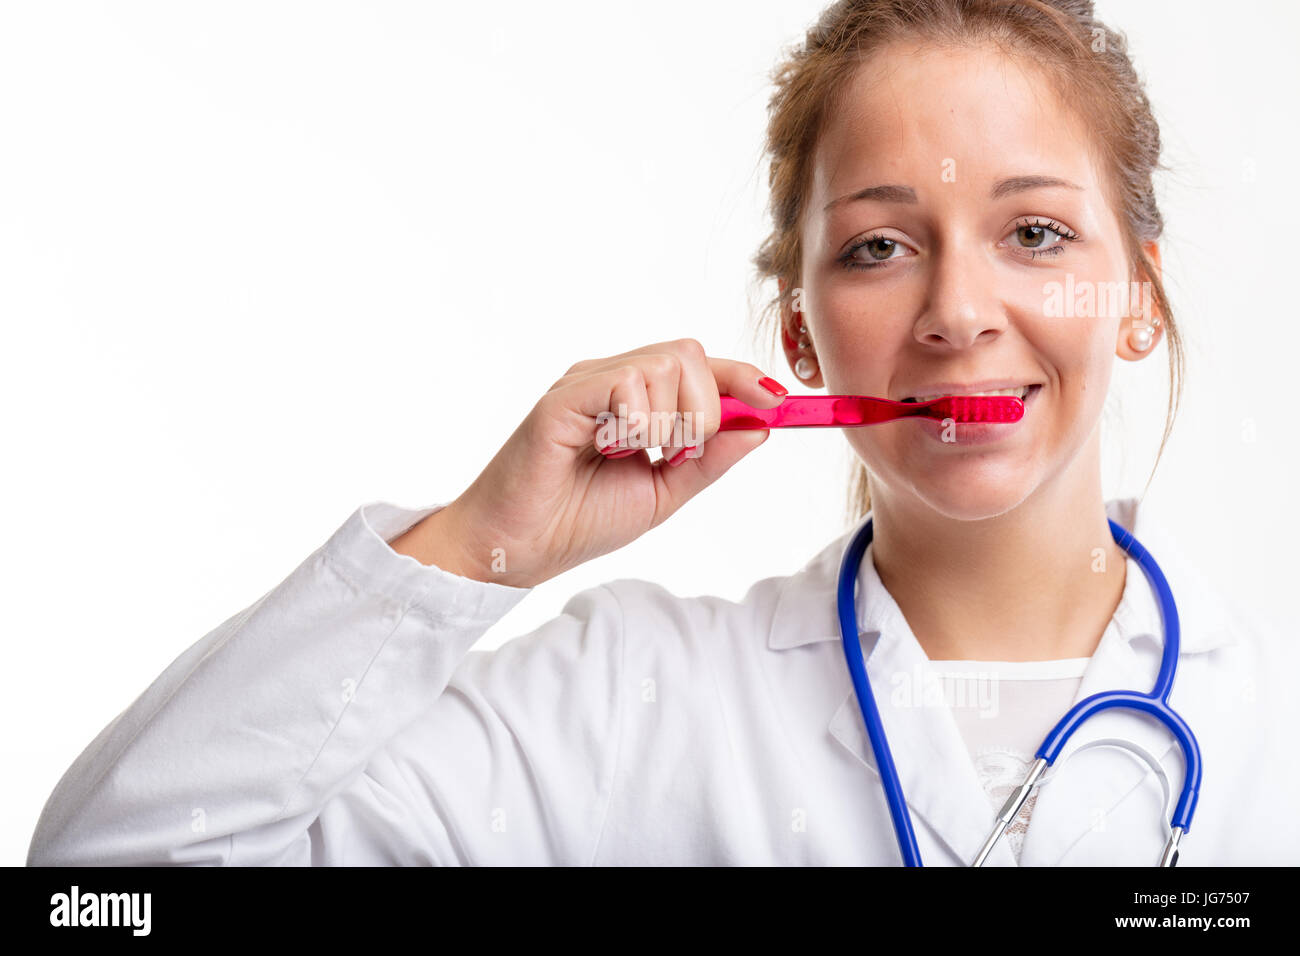 Joven enfermera o médico dental El cepillado de los dientes con un cepillo de plástico rojo en una higiene bucal y odontología concepto aislado en blanco Foto de stock